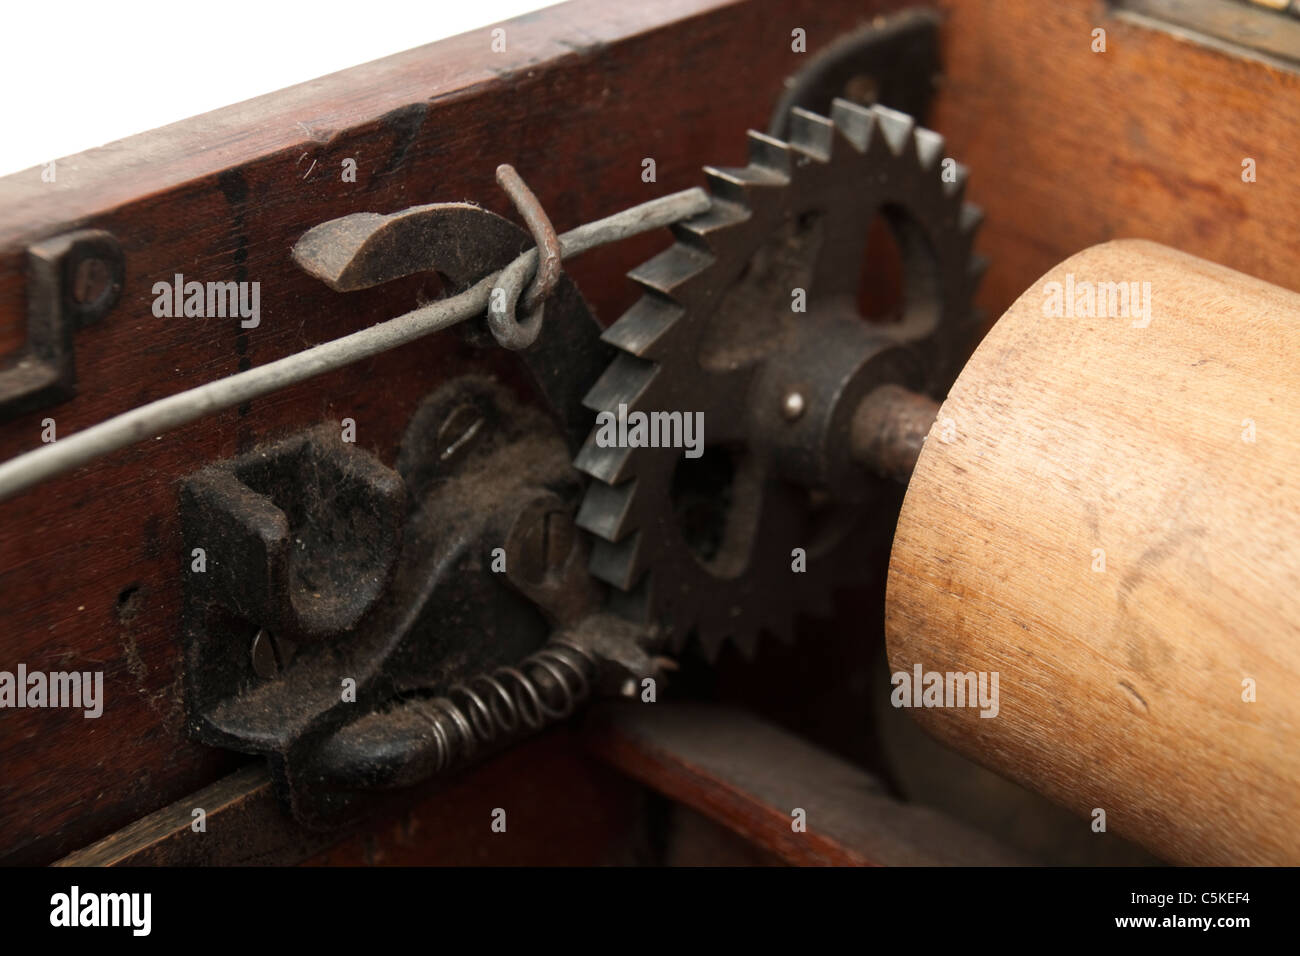 Internal mechanism of an antique O'Brian Self-Closing Till / Cash Register Stock Photo